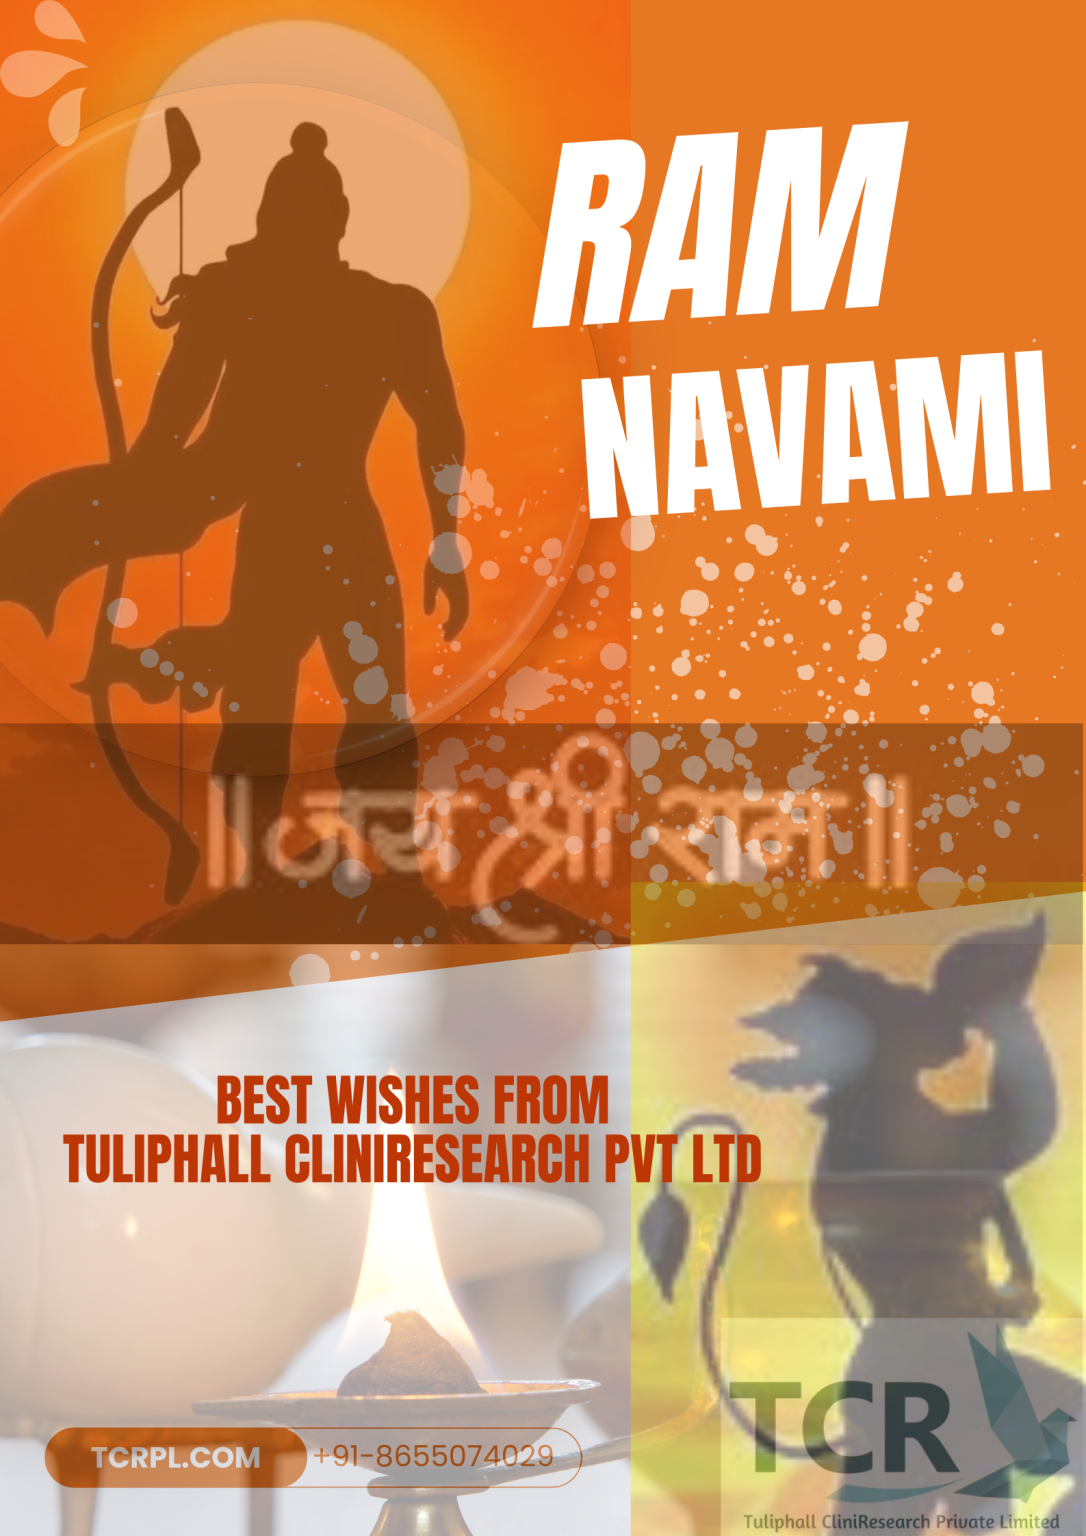 Ram Navami 2024